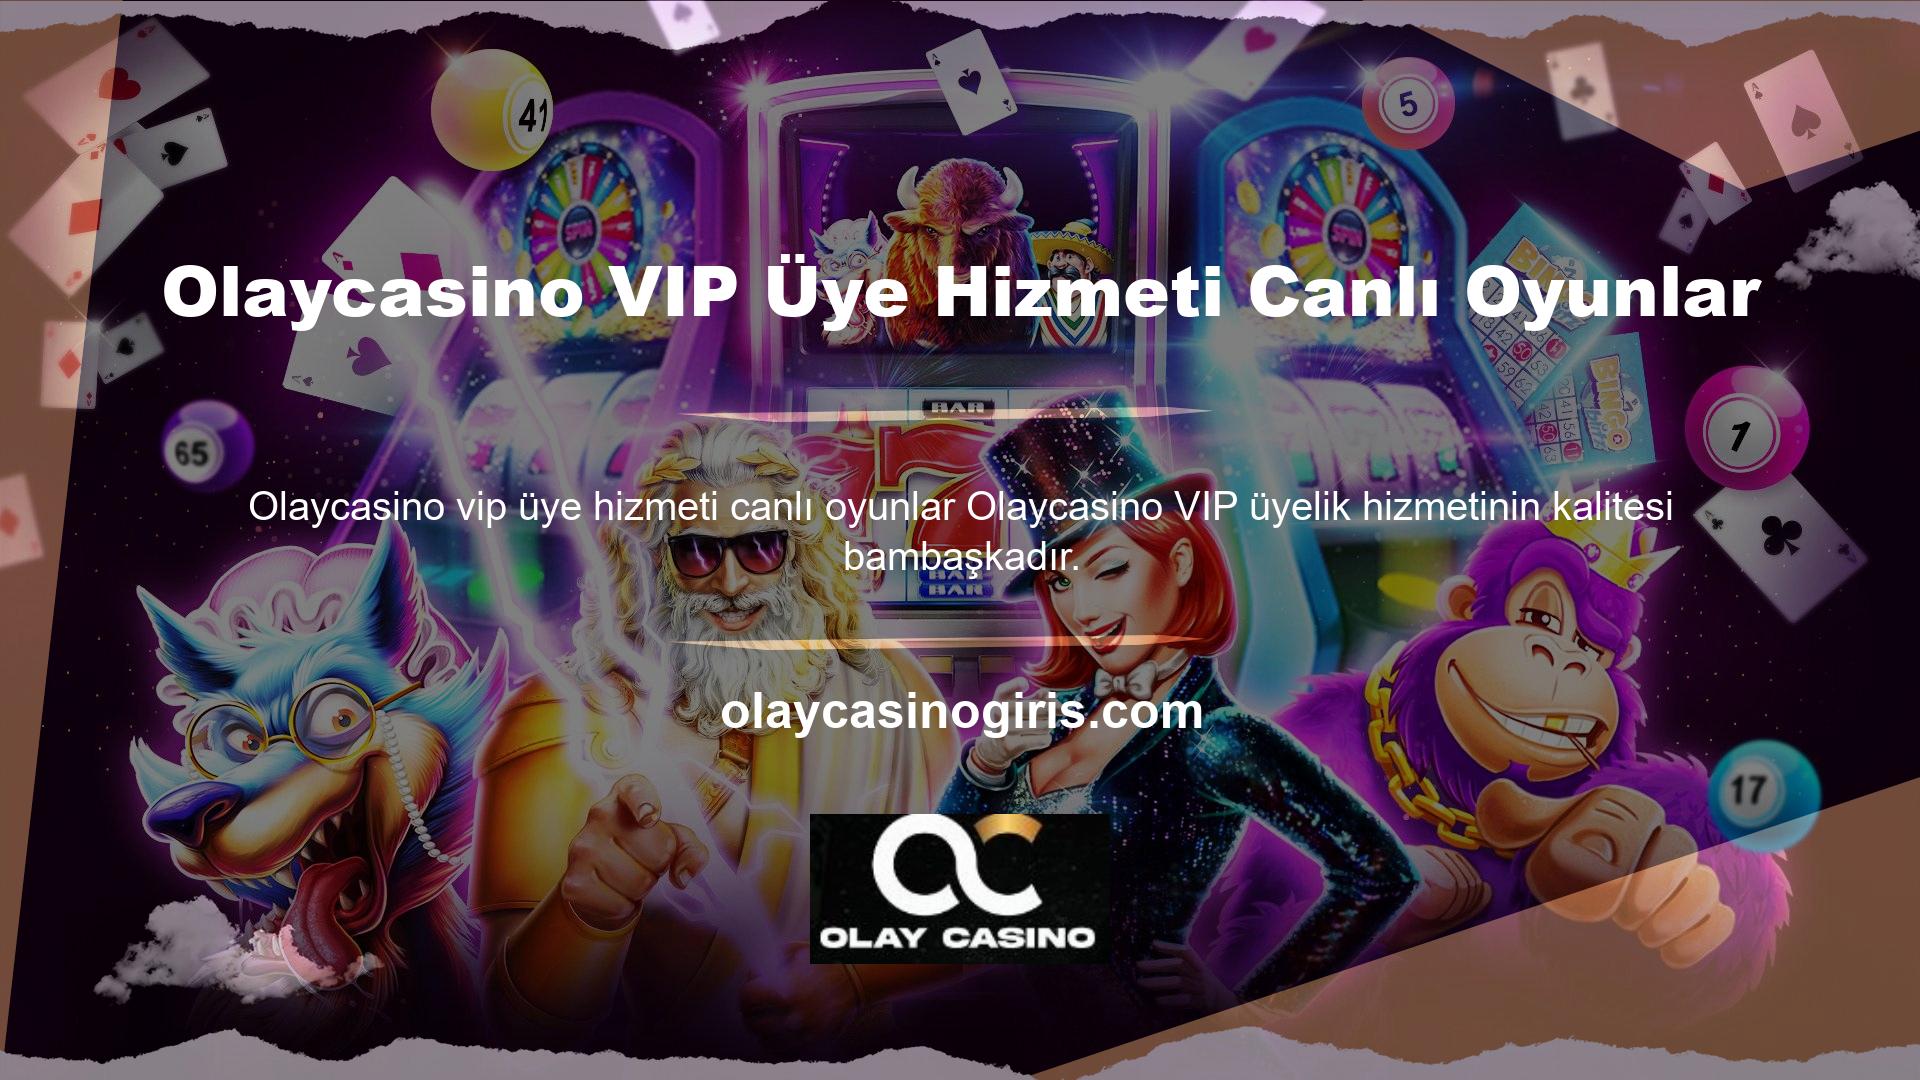 VIP üyelere özel bonus fırsatları, Olaycasino VIP üyelik hizmetlerine yönelik çeşitli alternatif para yatırma yöntemleri ve limitleri, canlı oyunlar, alternatif casino masaları ve limitleri ve en önemlisi VIP müşteri hizmetleri sunmaktadır